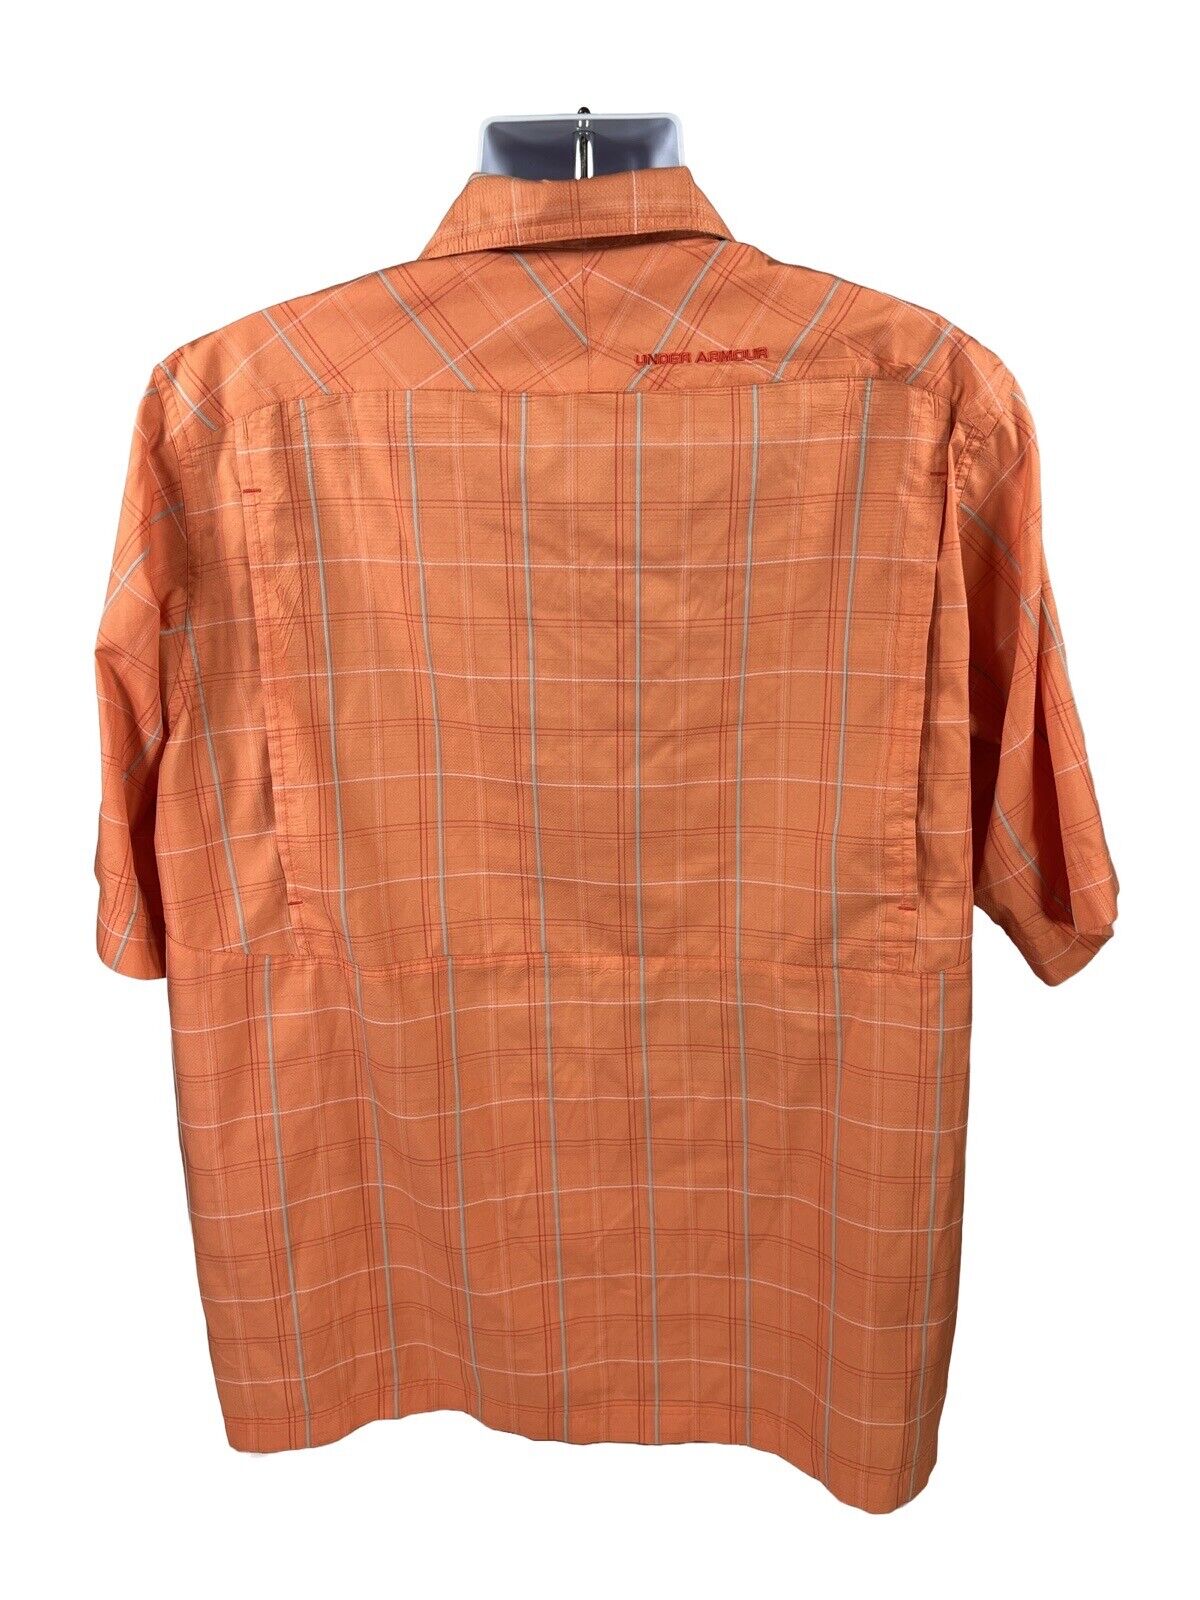 Under Armour Men's Orange Loose Fit Button Up Athletic Shirt - XL